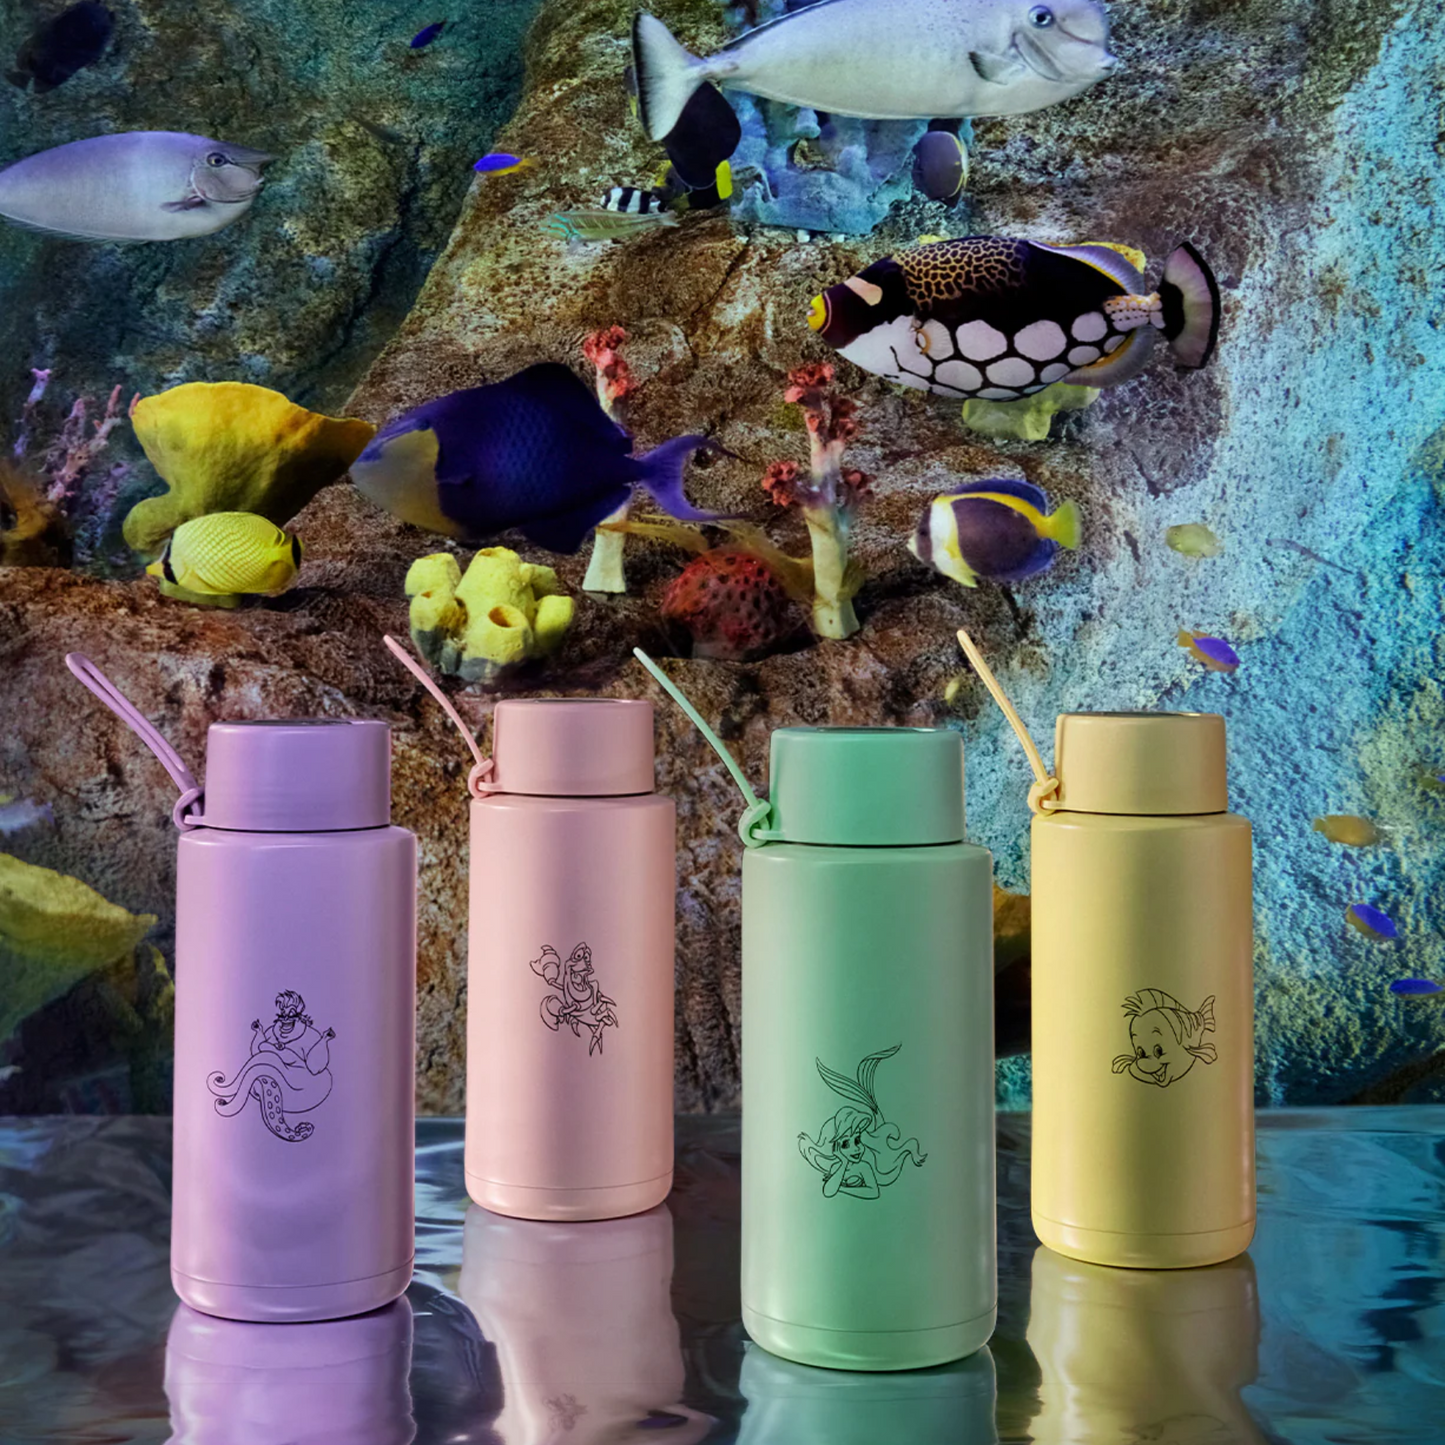 Frank Green Ceramic Reusable Bottle 34oz, Disney© The Little Mermaid Flounder